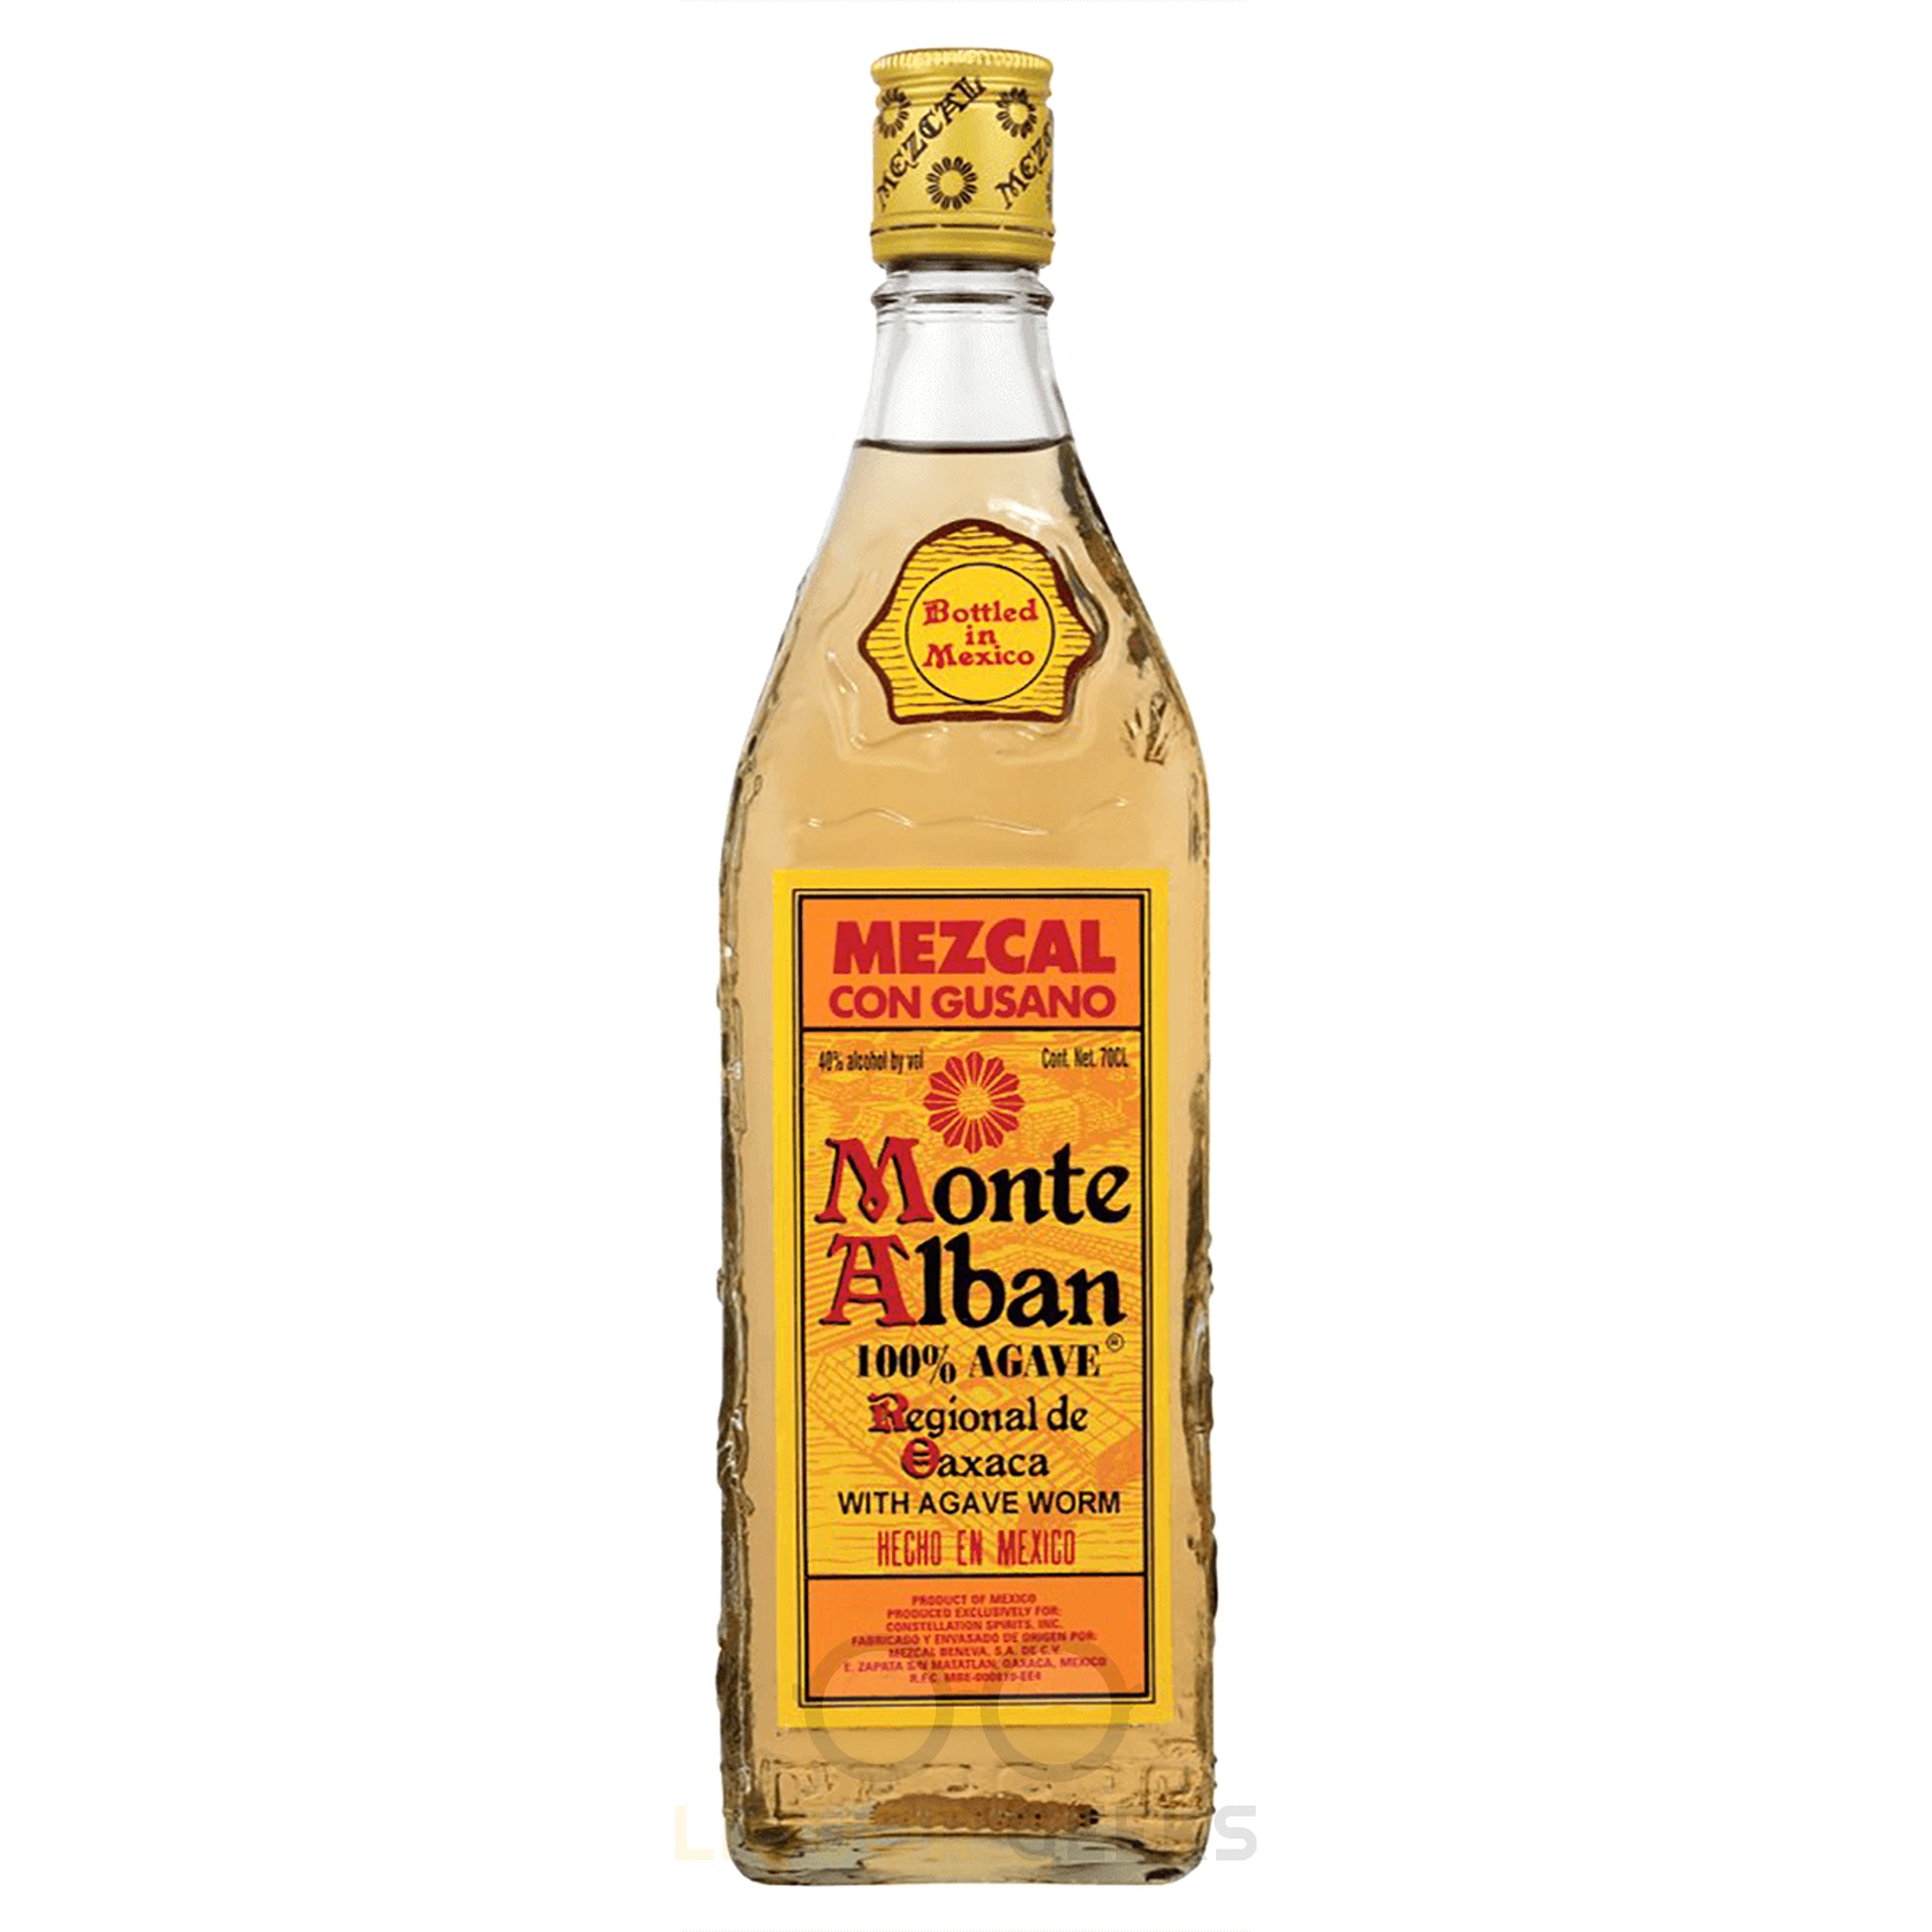 Monte Alban Mezcal Con Gusano - Liquor Geeks